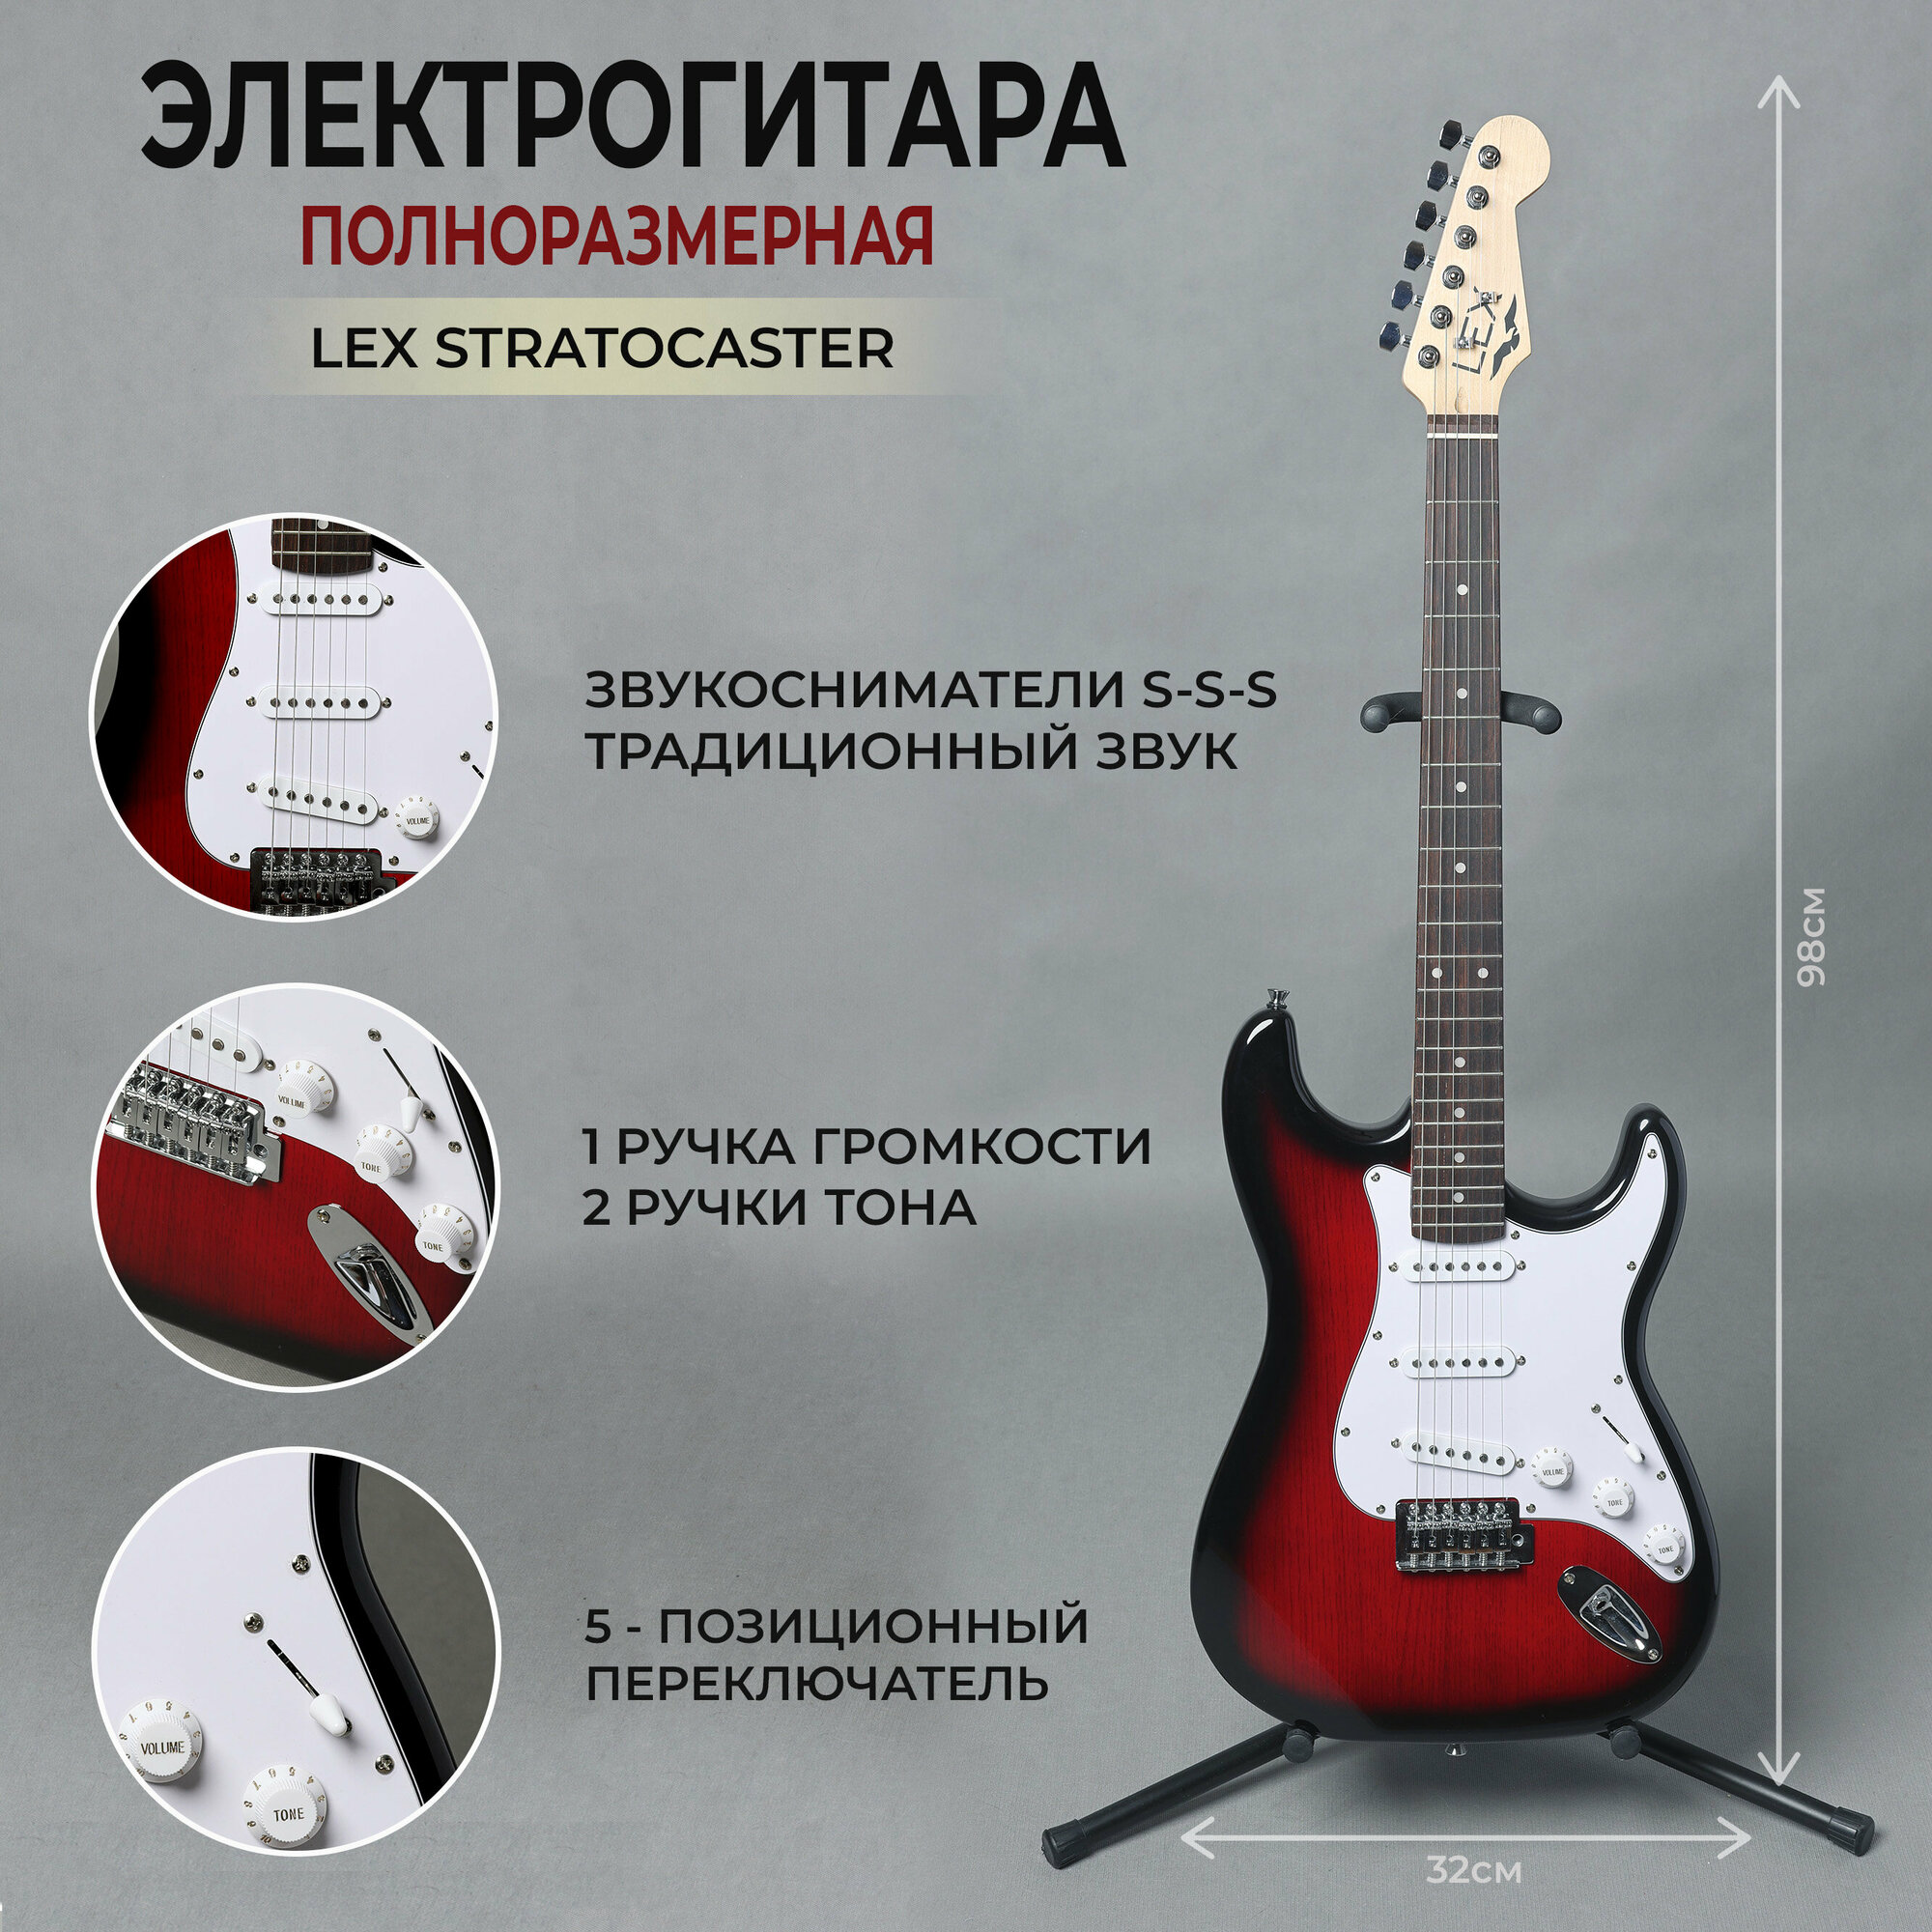 Набор гитариста 12 в 1 (электрогитара процессор эффектов наушники колонка аксессуары)